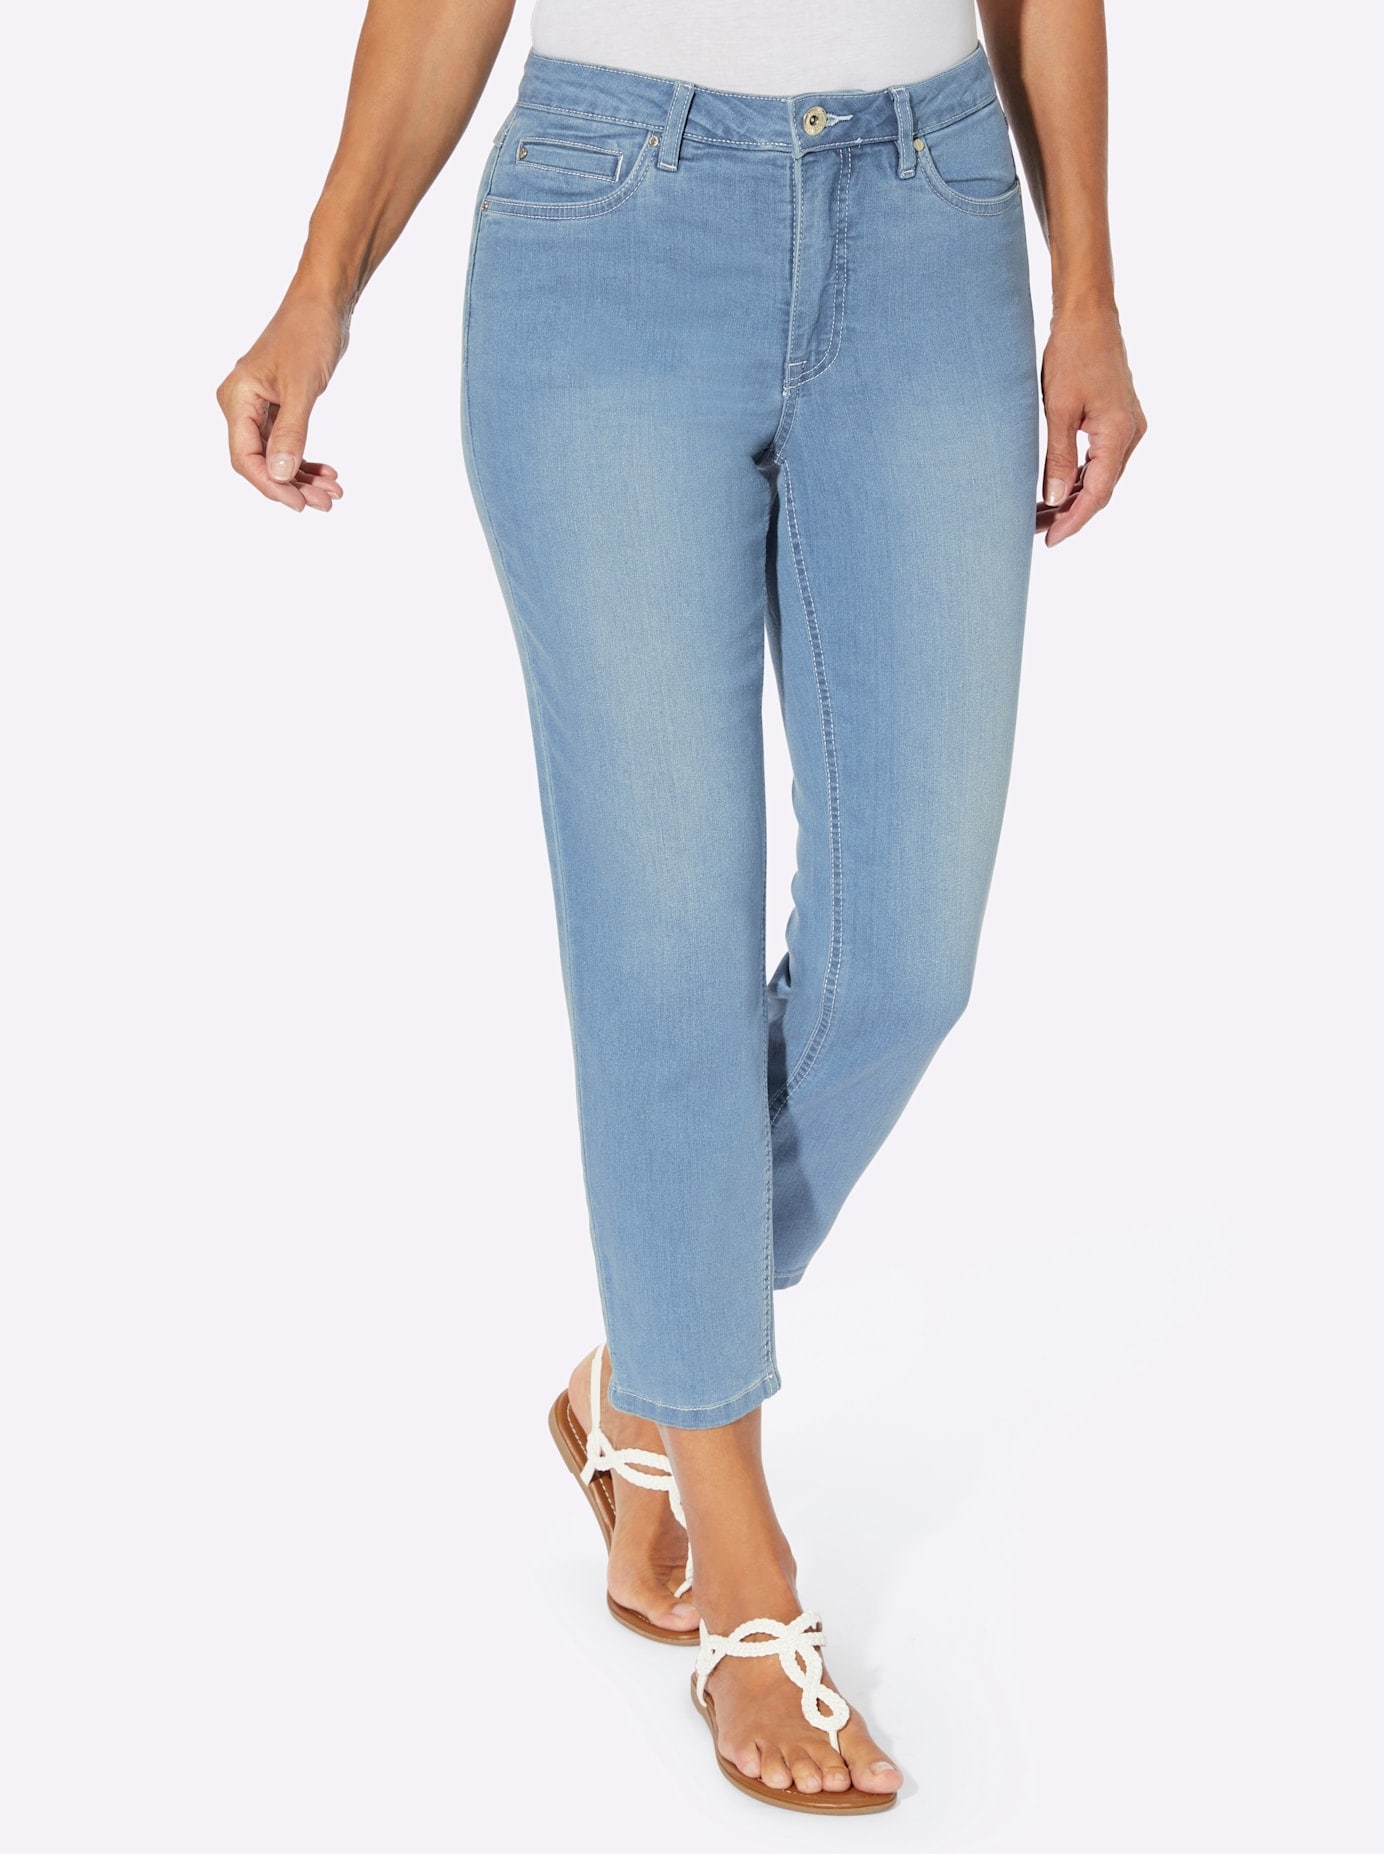 Ankle Jeans Großen Größen für Damen |Winter| online kaufen | BAUR